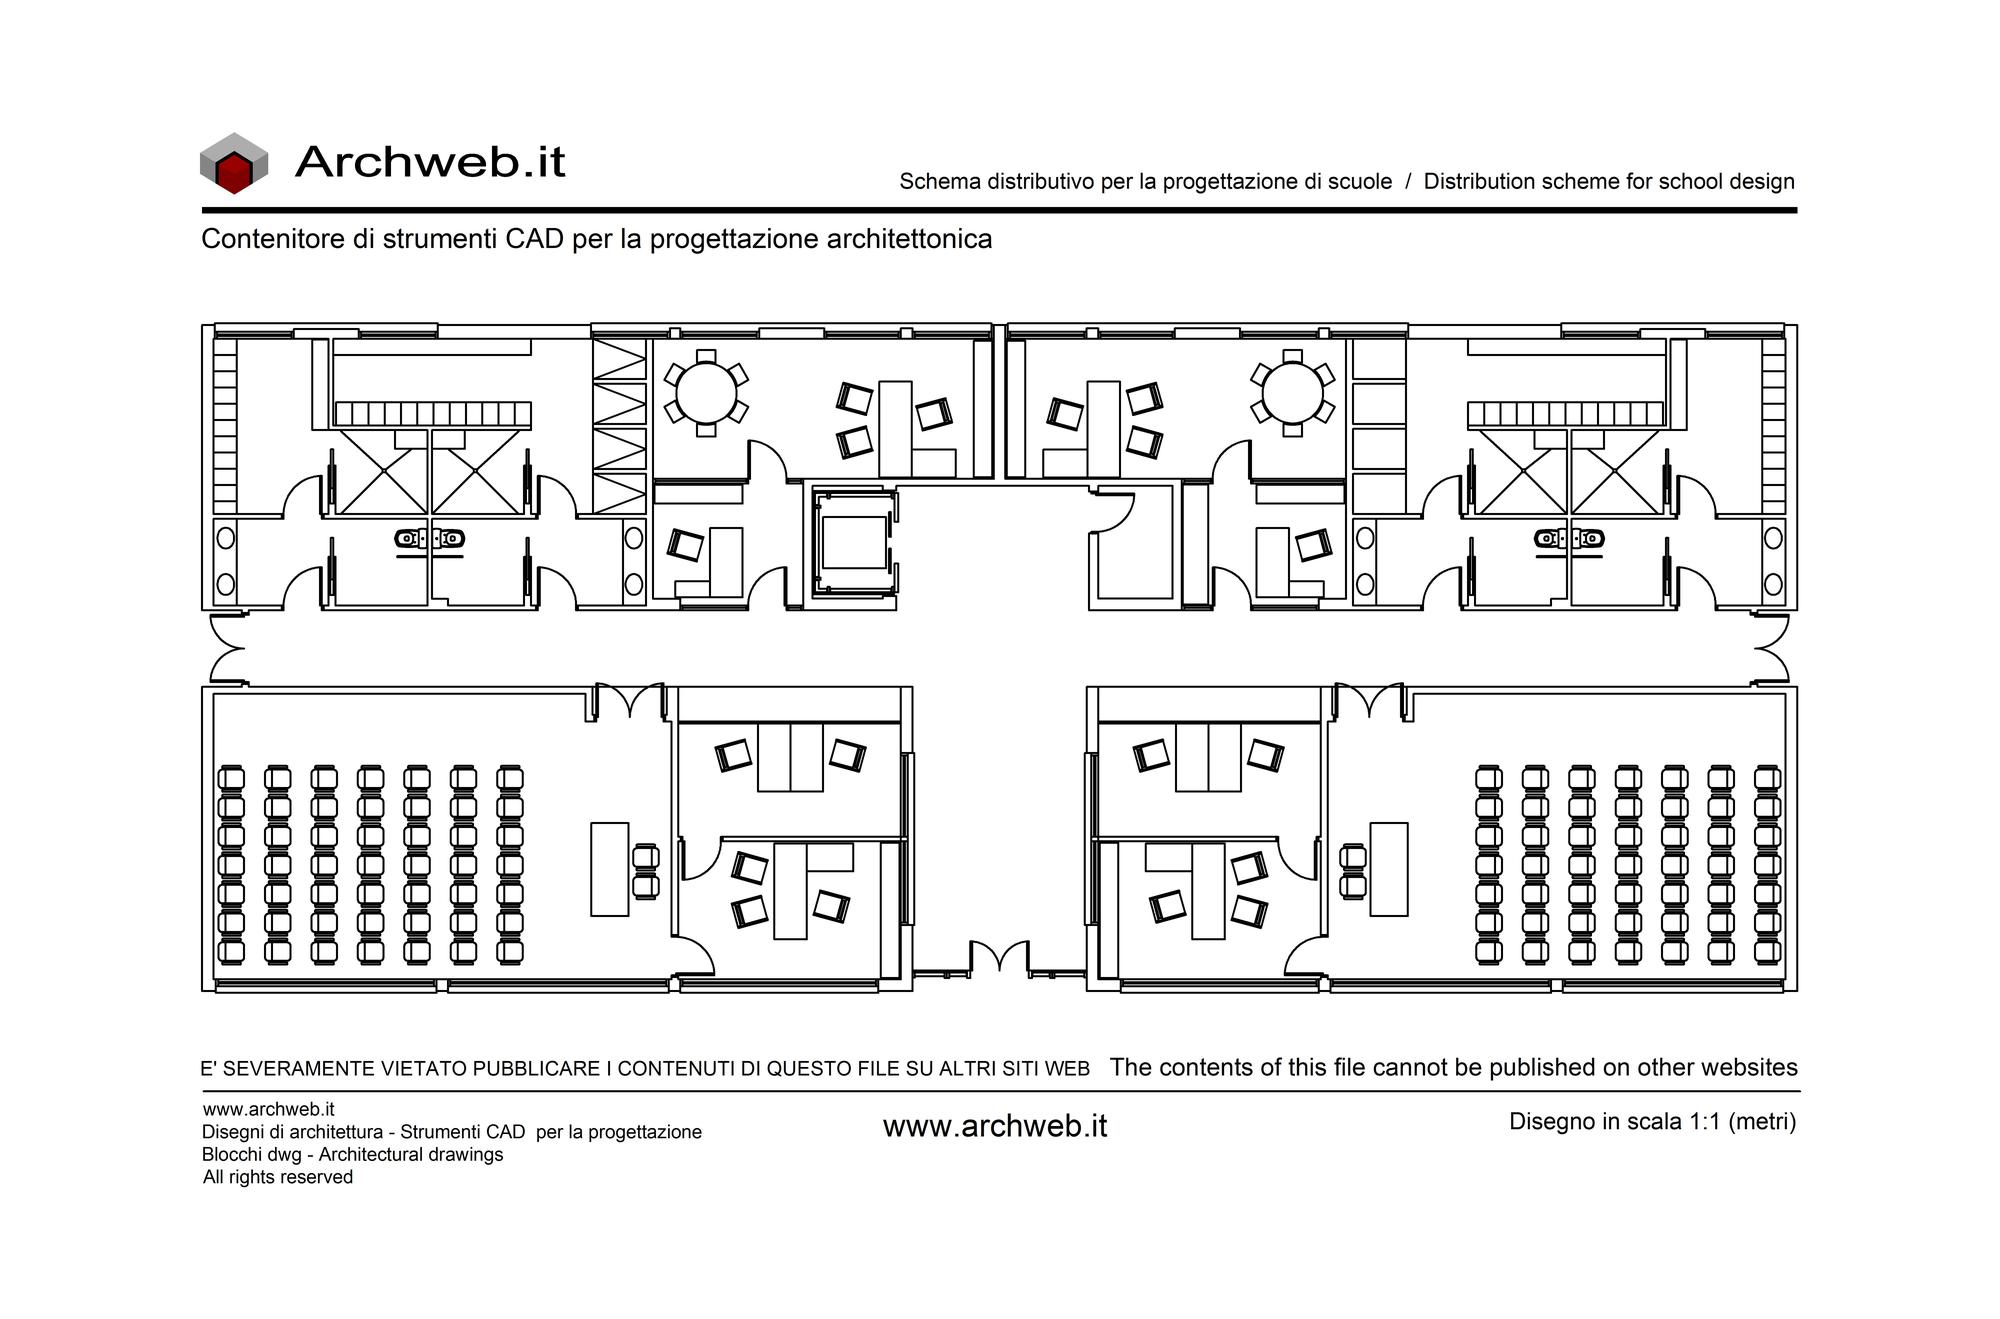 School plan 01- 1:100 scale dwg drawing - Archweb